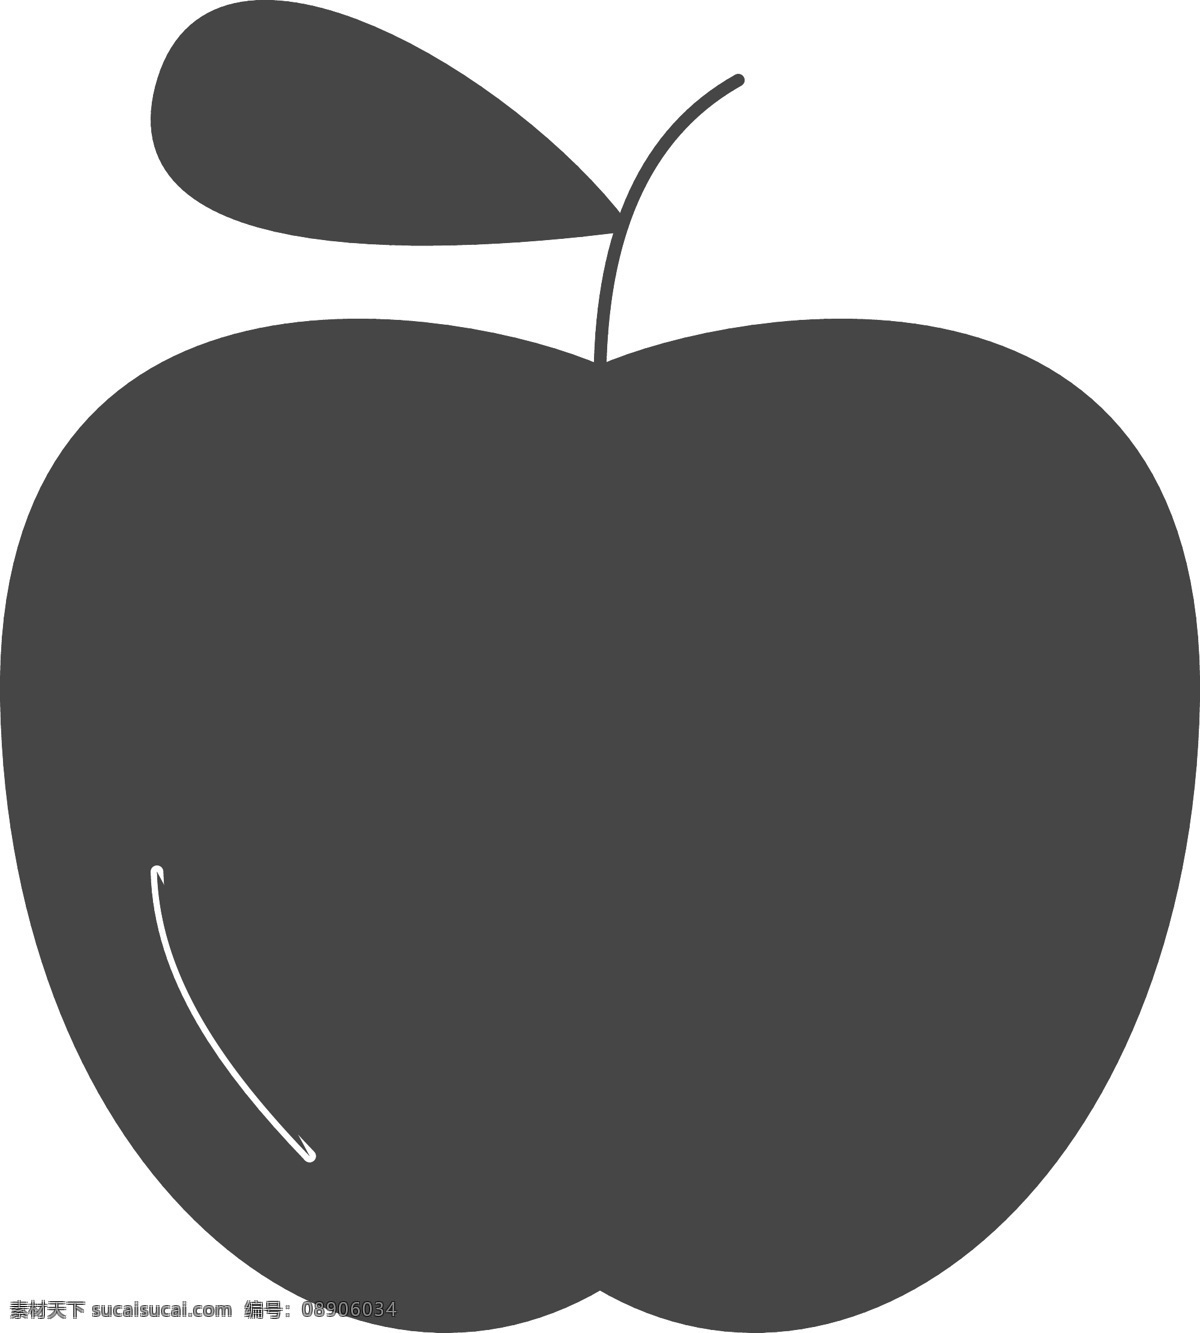 卡通 苹果 图标 免 抠 图 黑色苹果 水果苹果 ui应用图标 水果图标 网页图标 简易的水果 卡通图案 卡通插画 免抠图